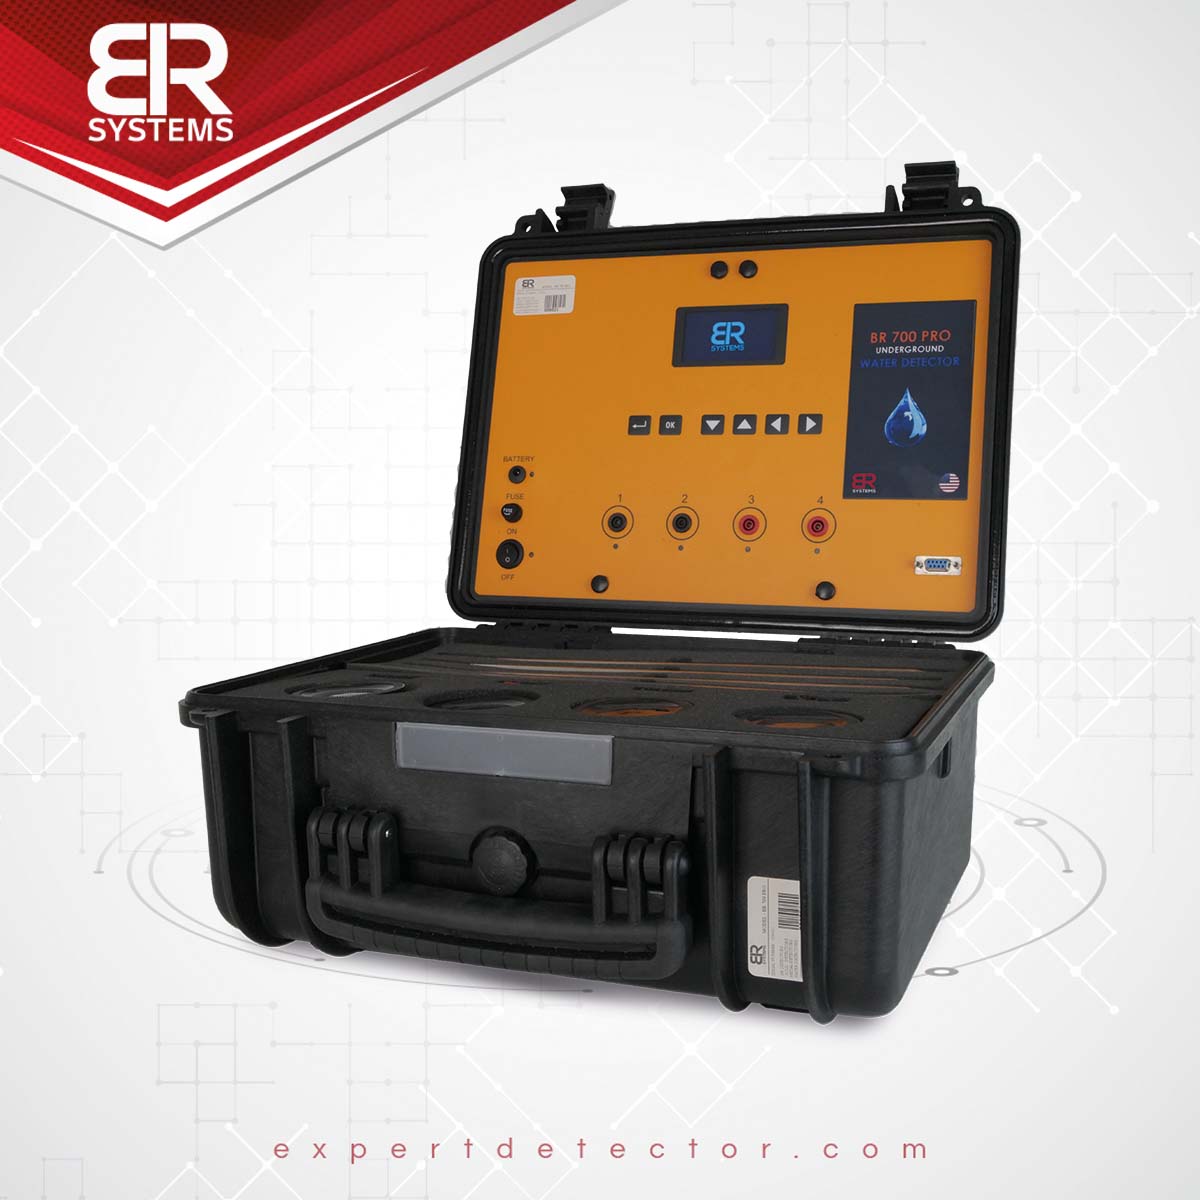 BR 700 pro underground water detector